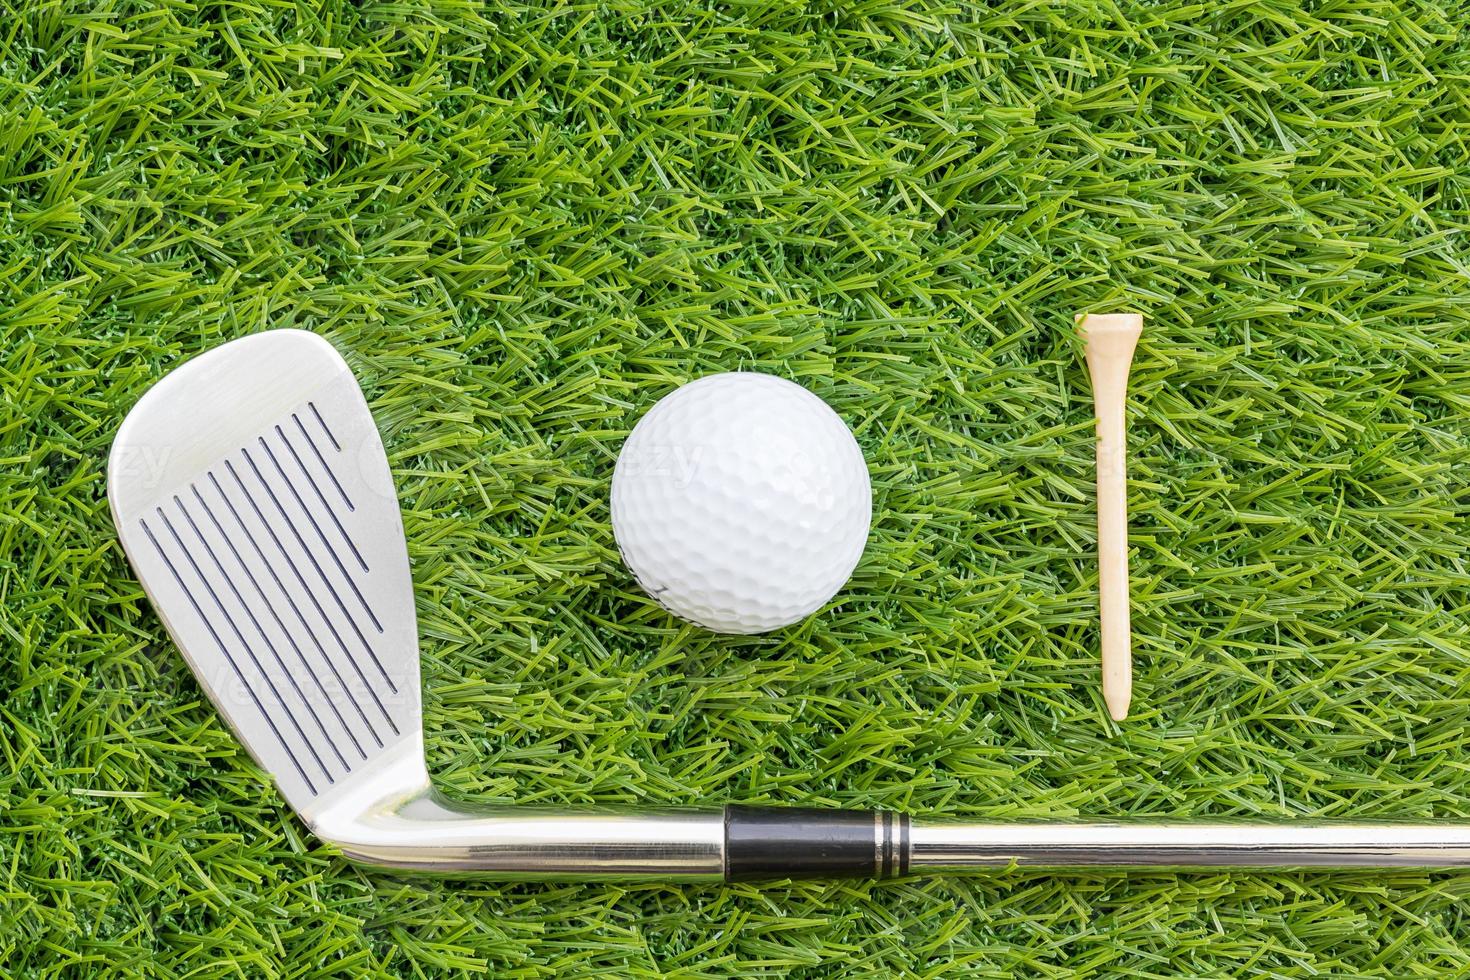 sportobject gerelateerd aan golfuitrusting foto